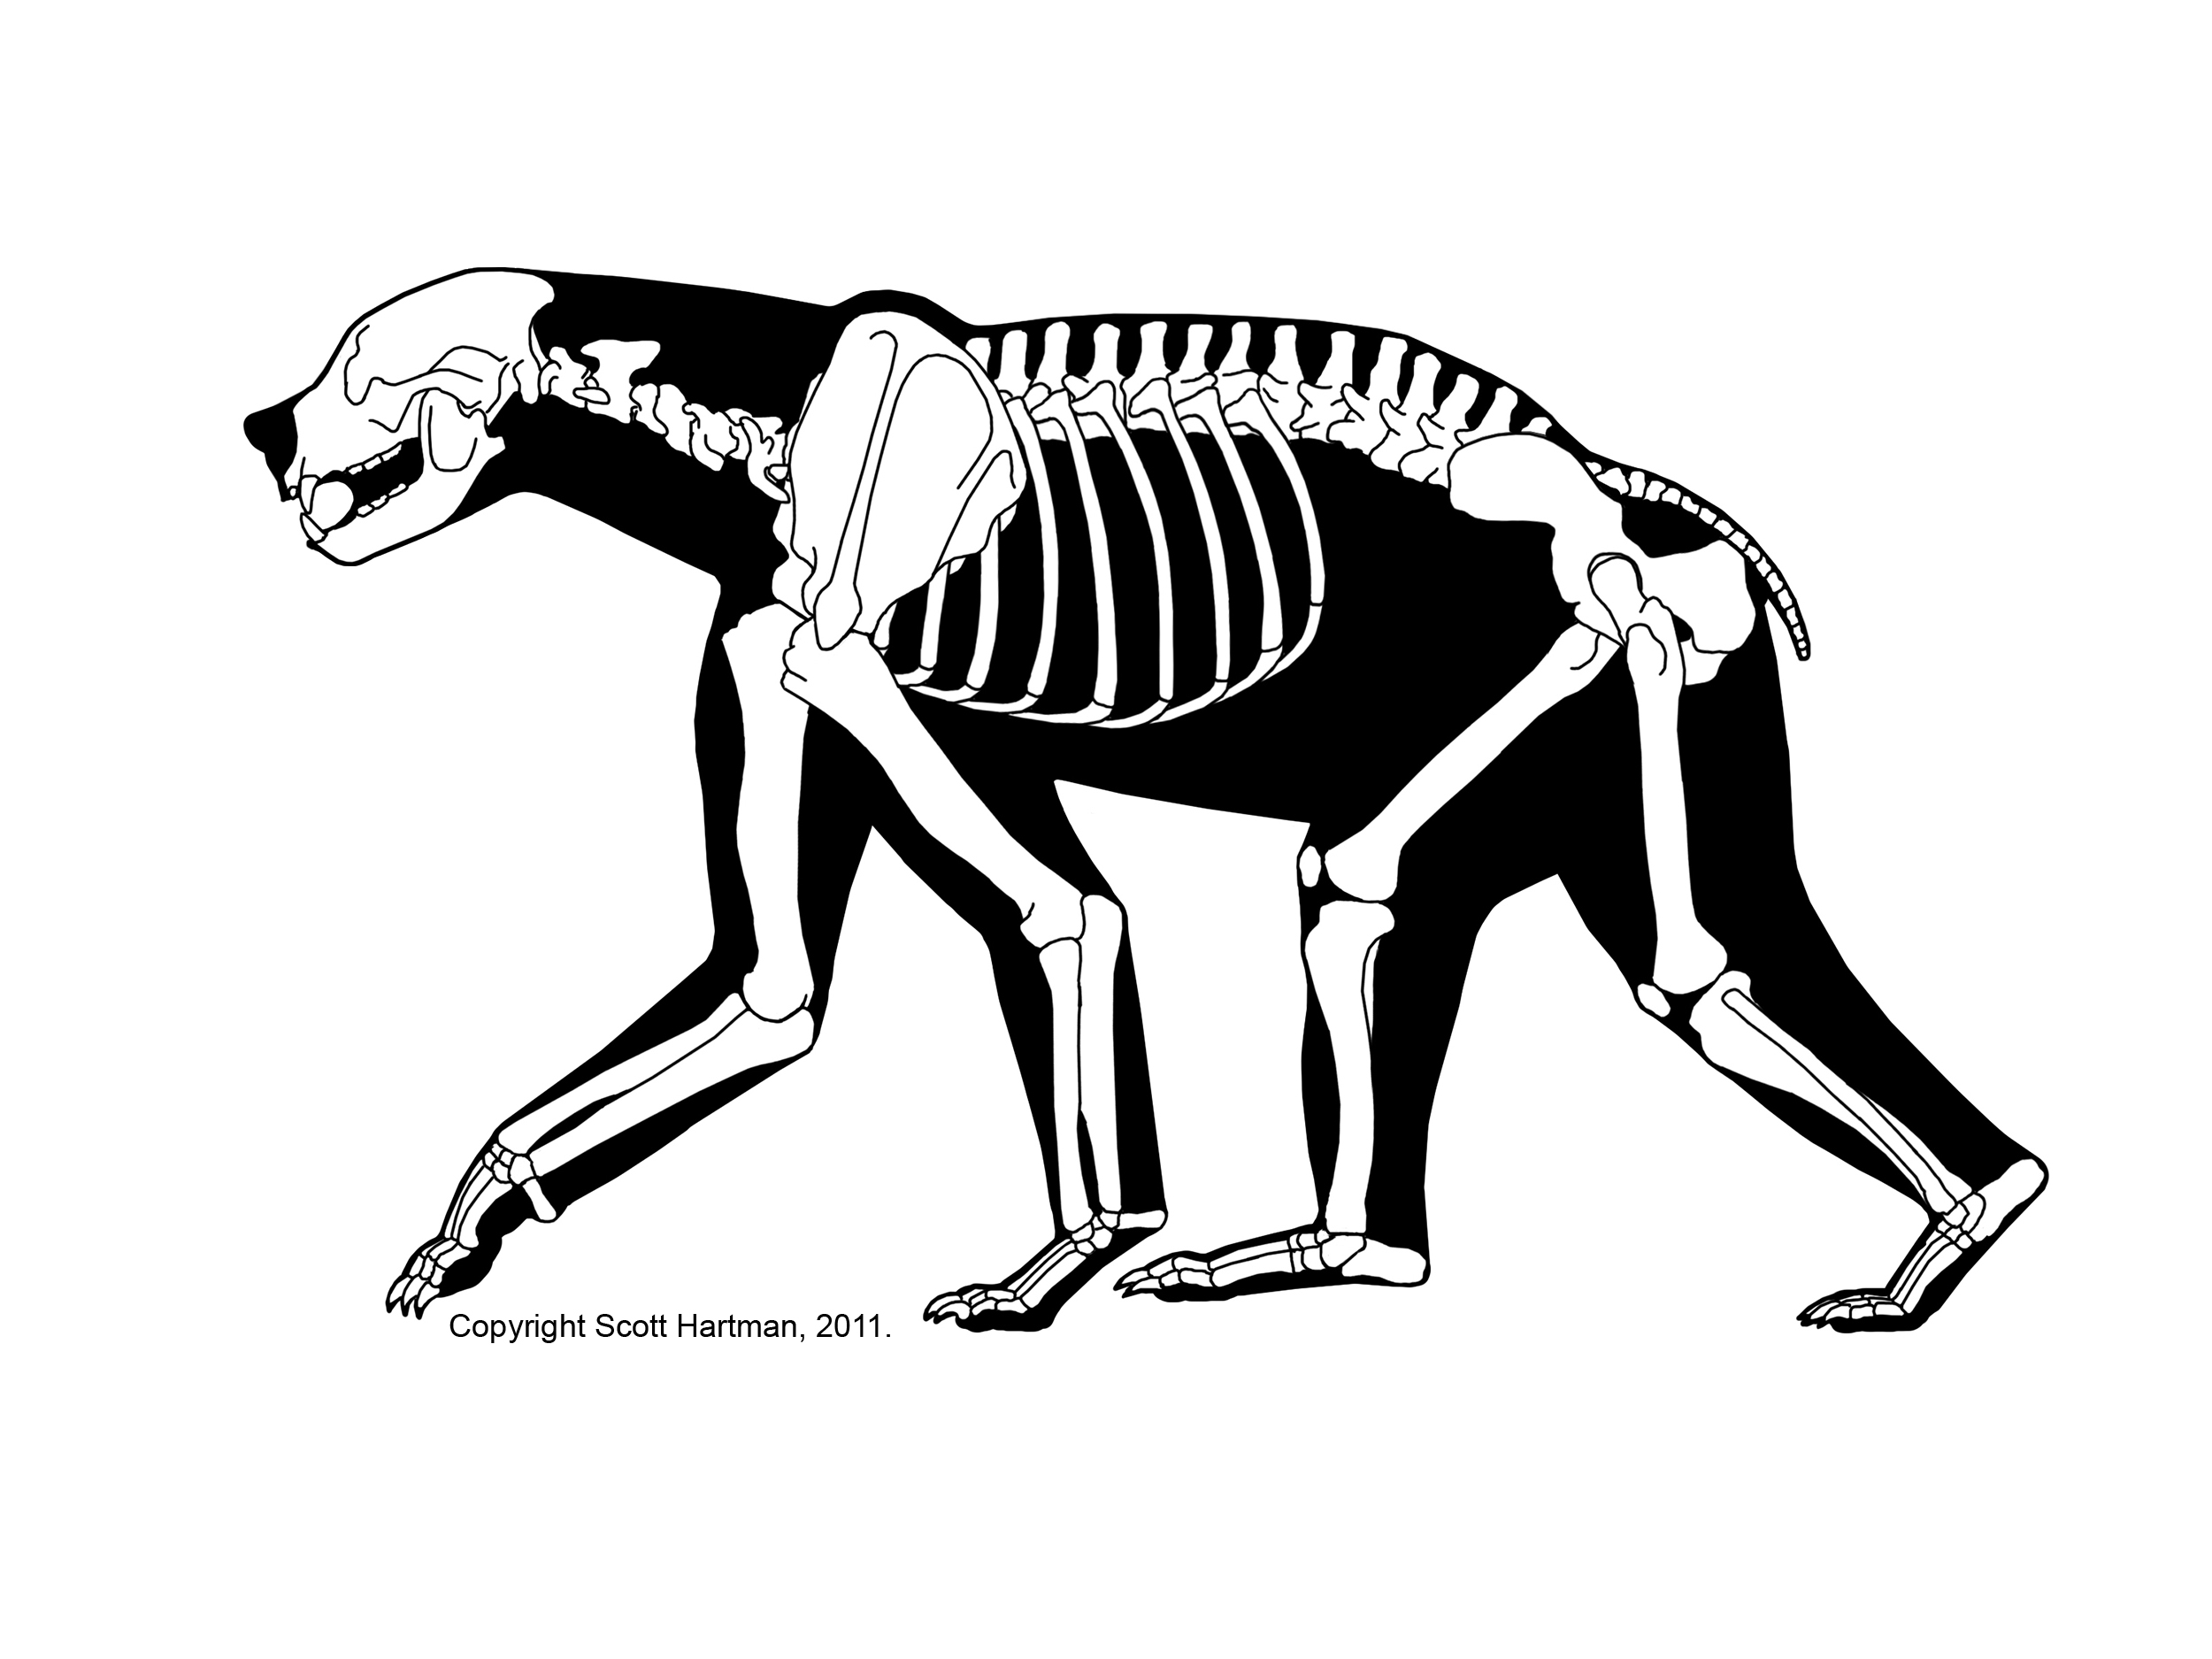 Non-DinosaursDr. Scott Hartman's Skeletal Drawing.com